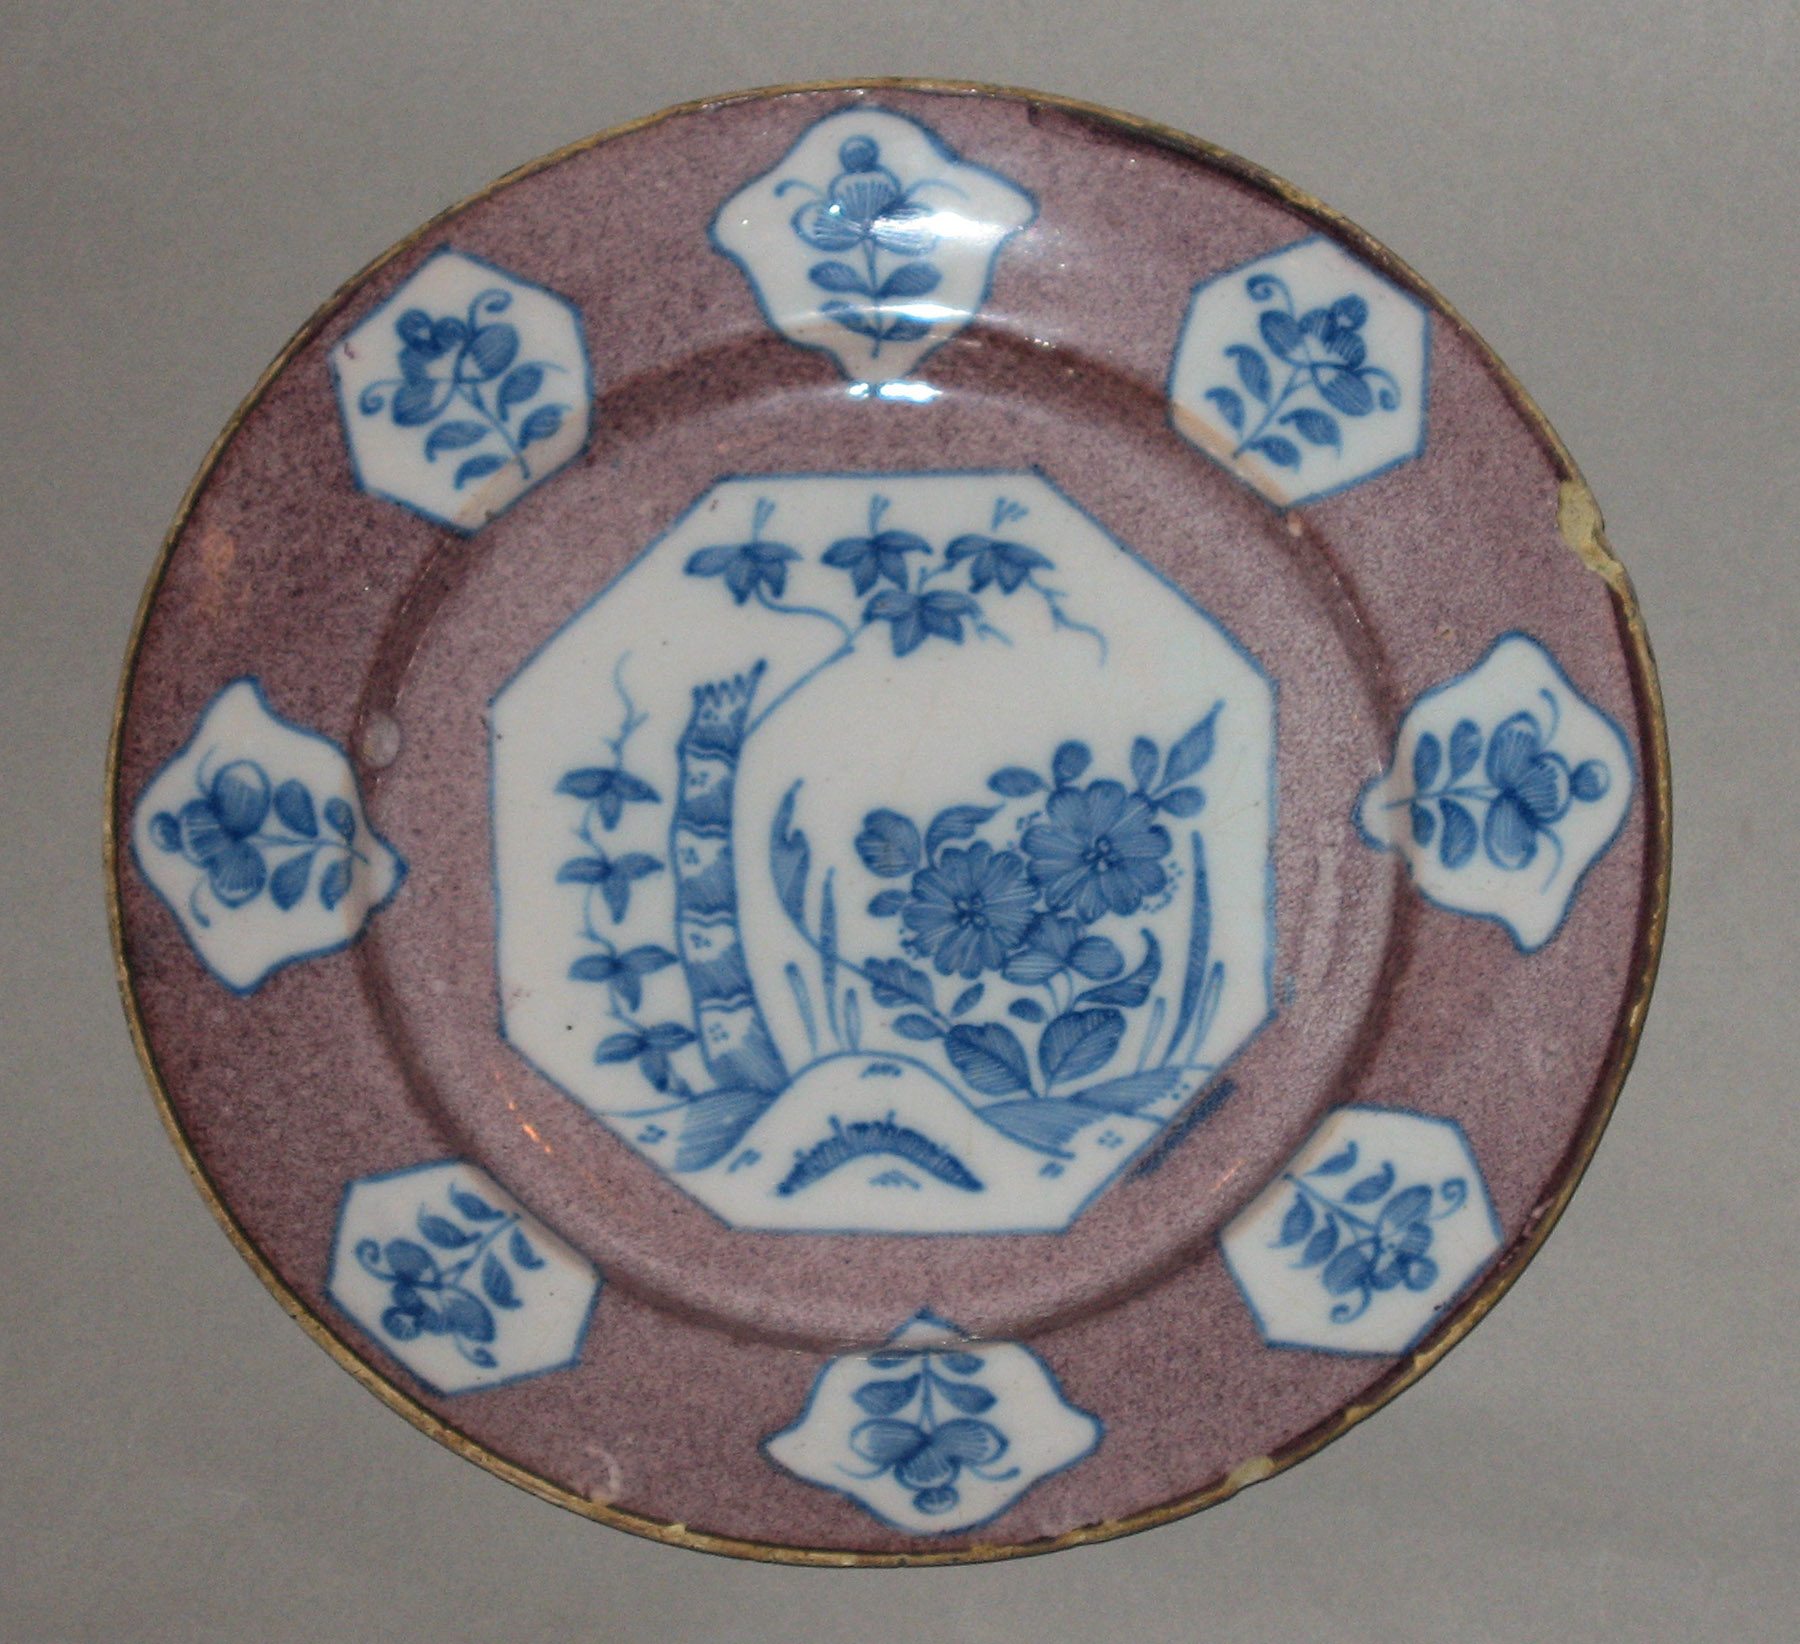 2003.0022.082 Delft plate